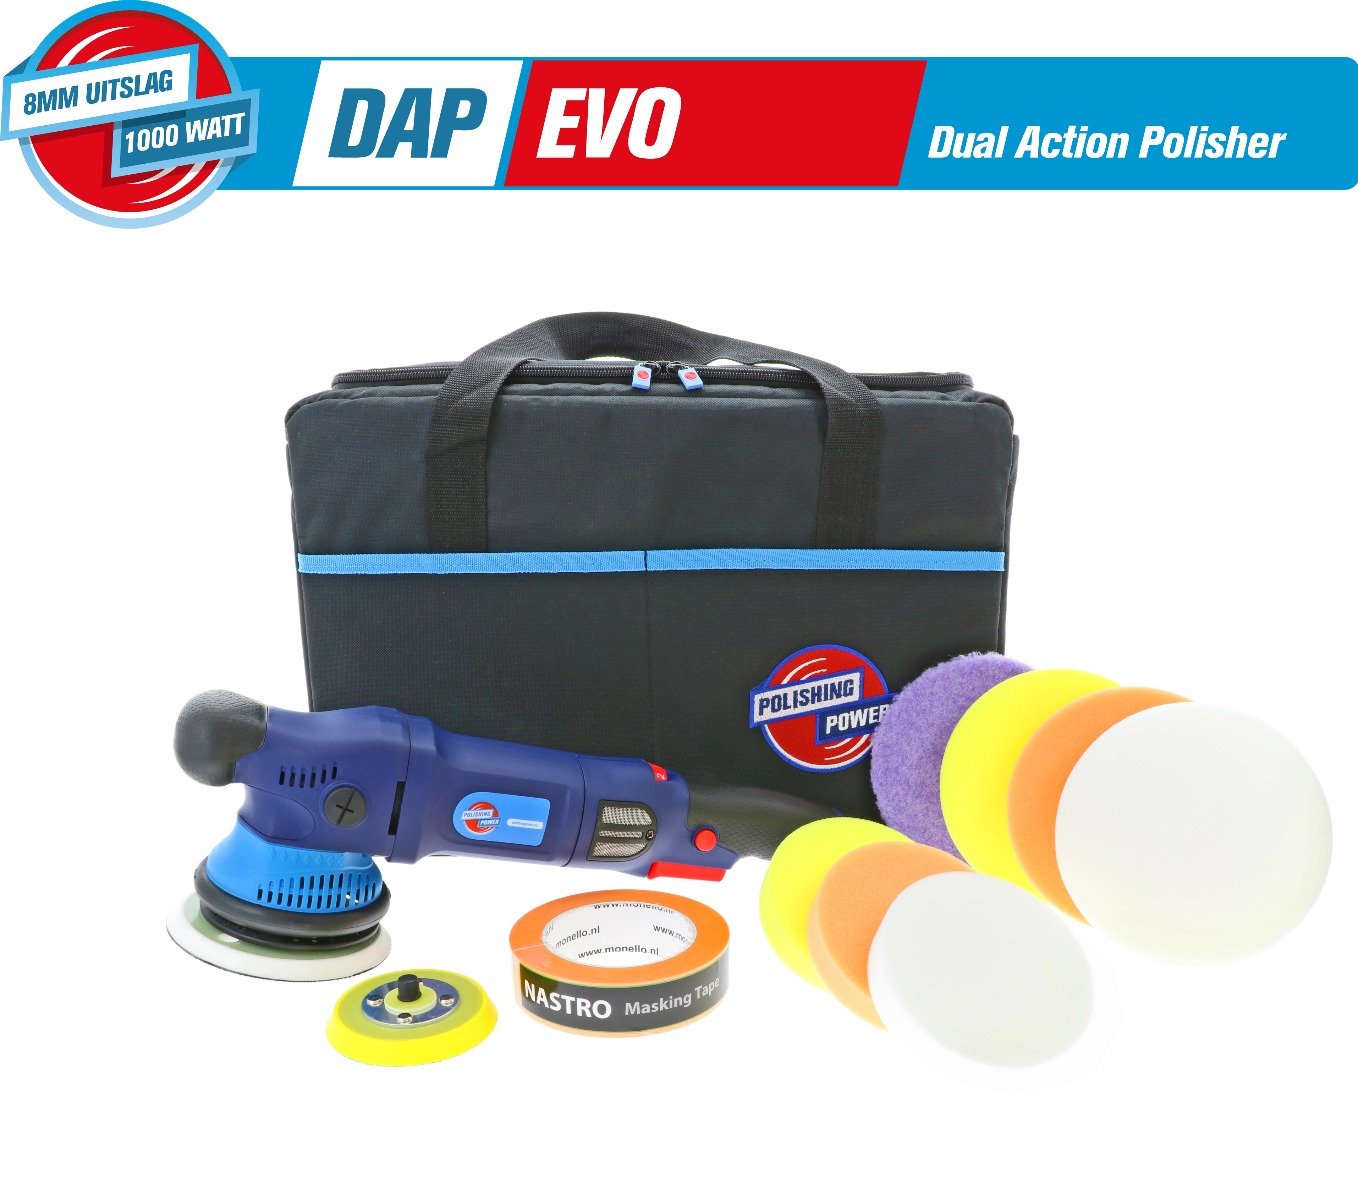 DAP EVO 8mm D/A 1000 Watt - First Edition Pre-Order Kit